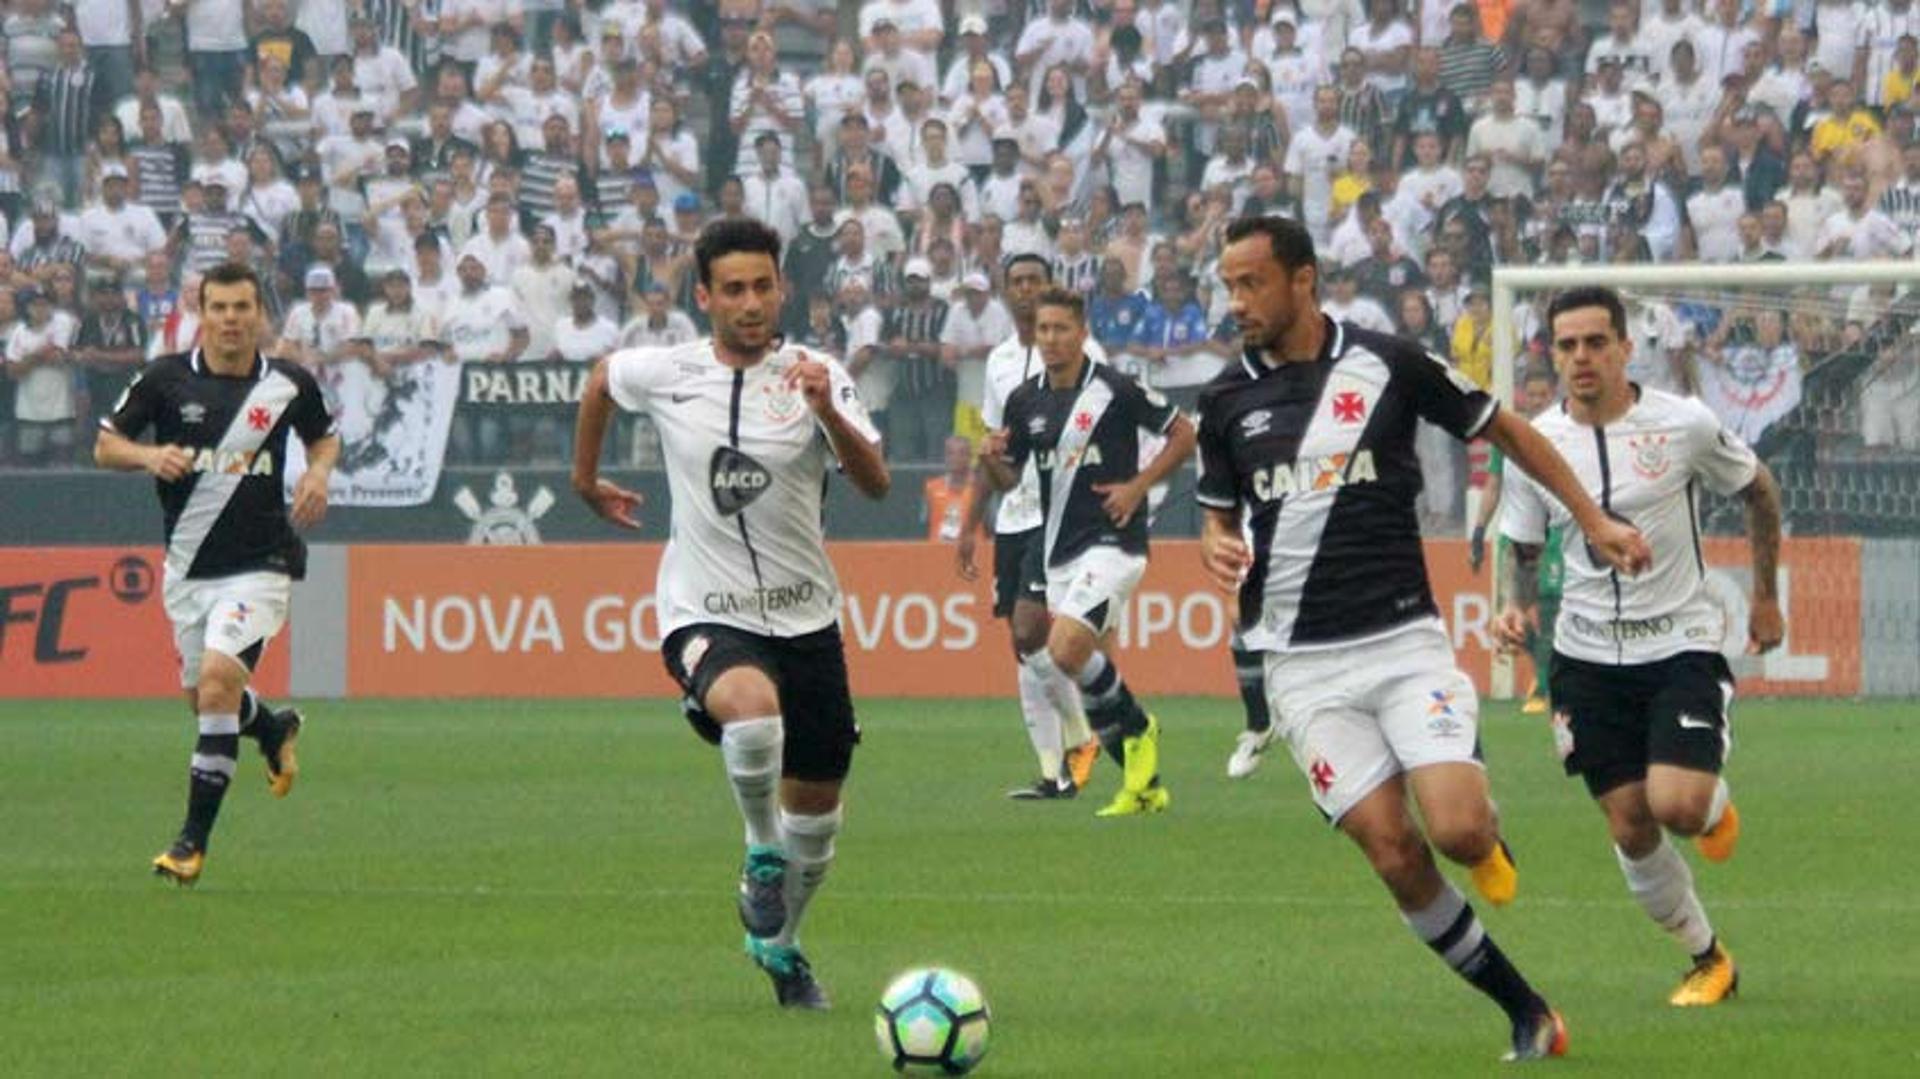 Vasco fez um bom primeiro tempo contra o Corinthians. Veja a seguir galeria de fotos da partida